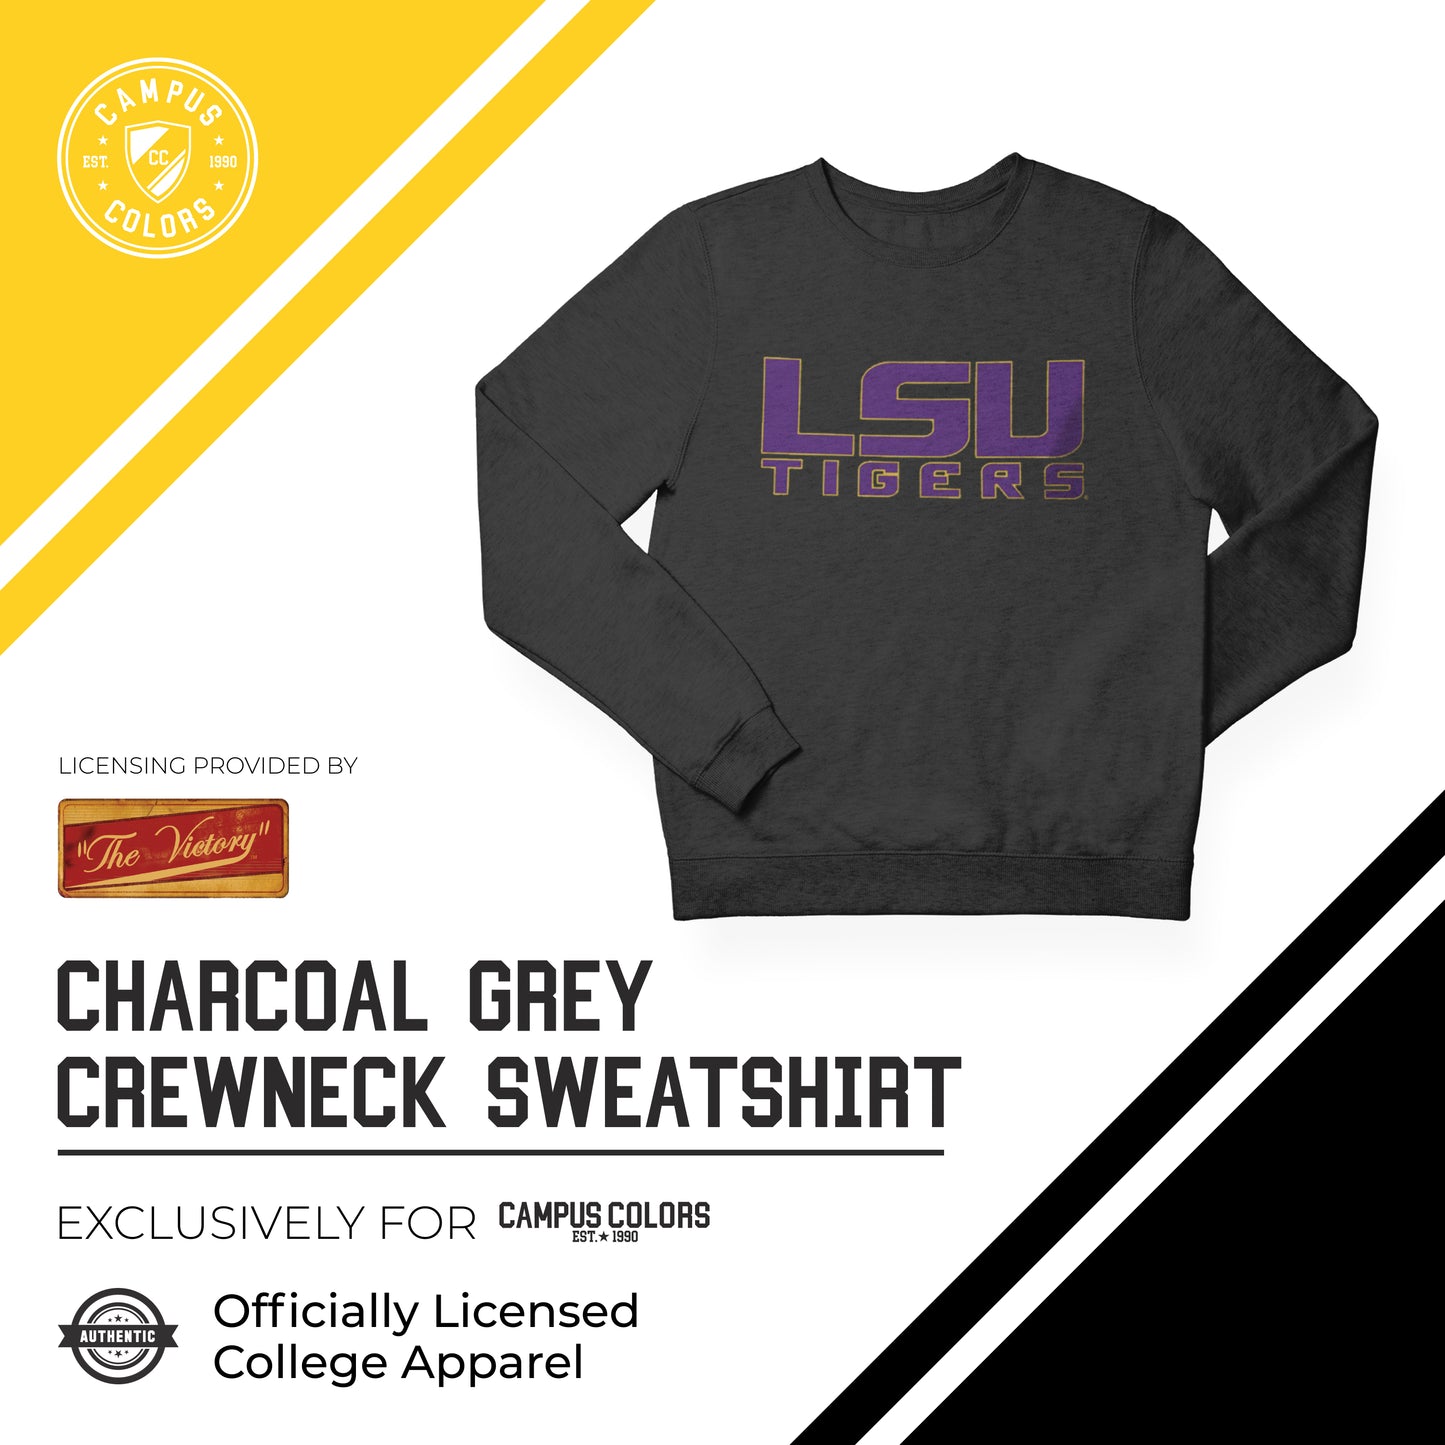 LSU Tigers NCAA Adult Charcoal Crewneck Fleece Sweatshirt - Charcoal